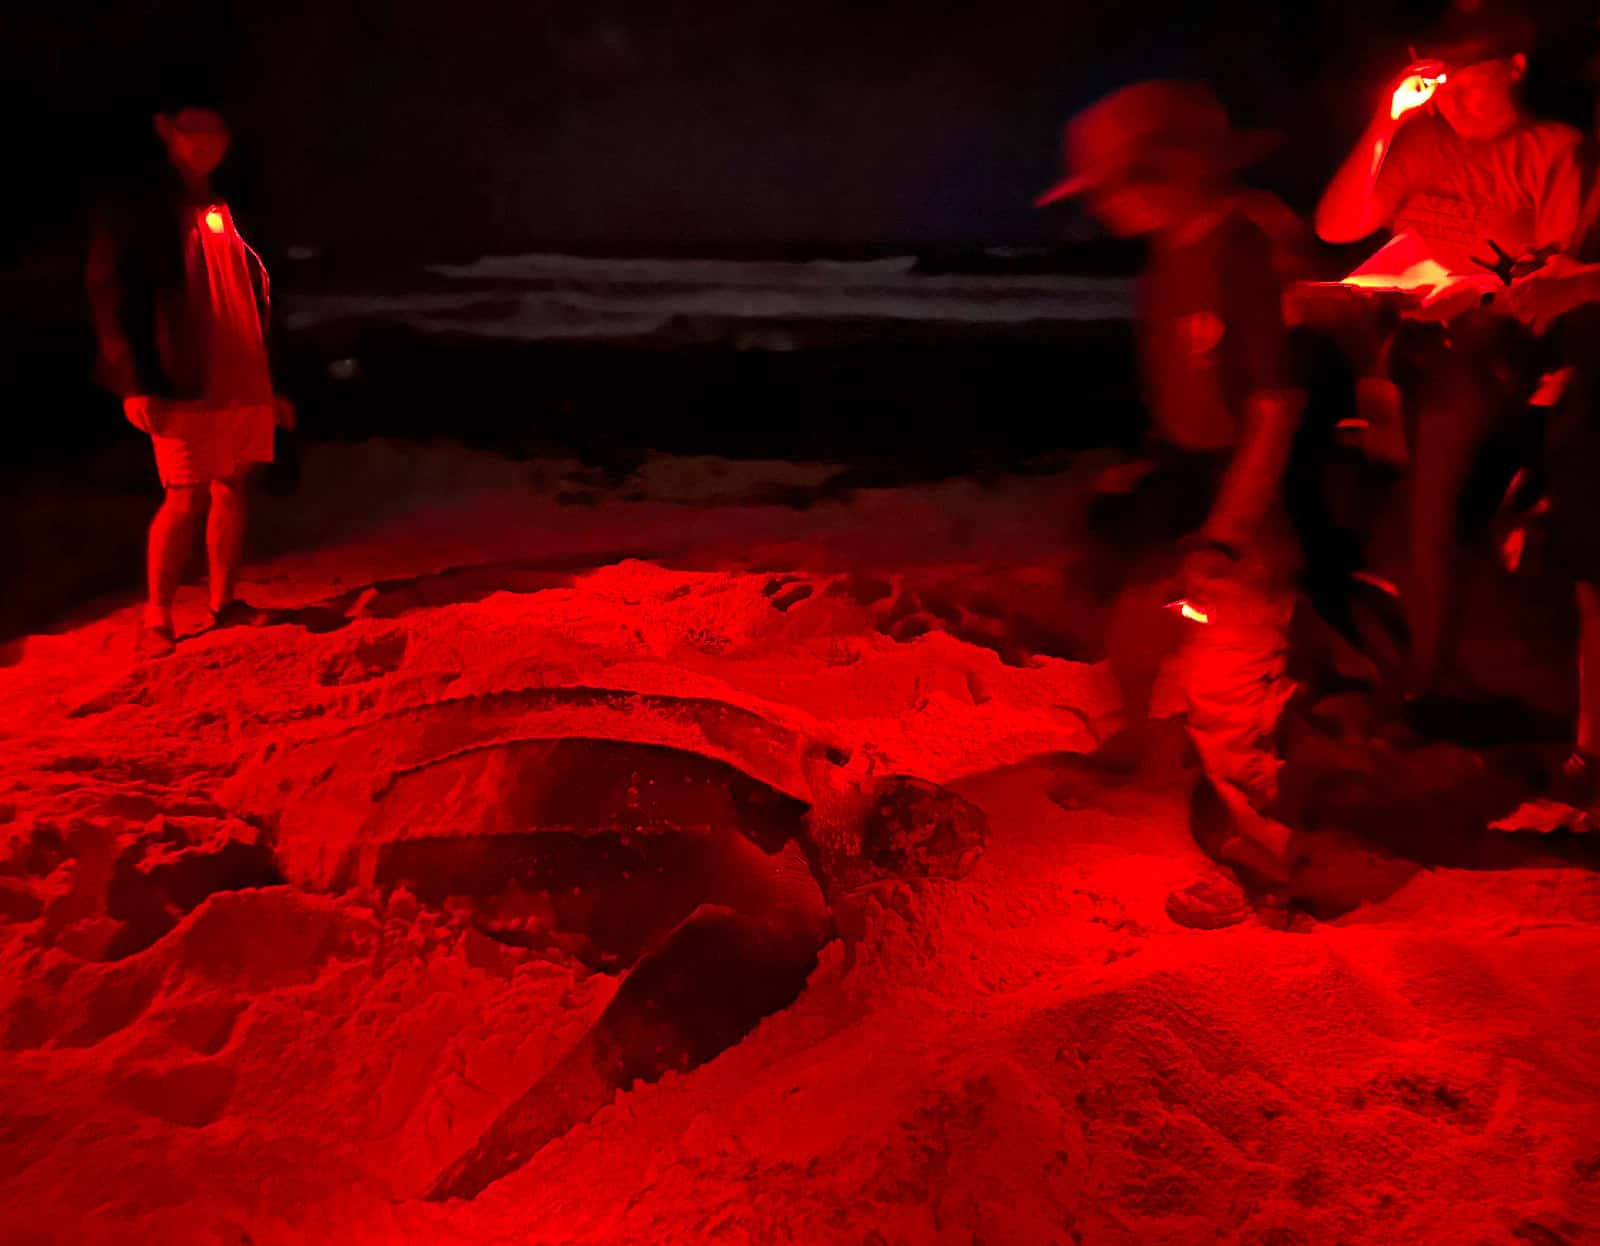 sea turtle safe flashlights used while sea turtle nesting